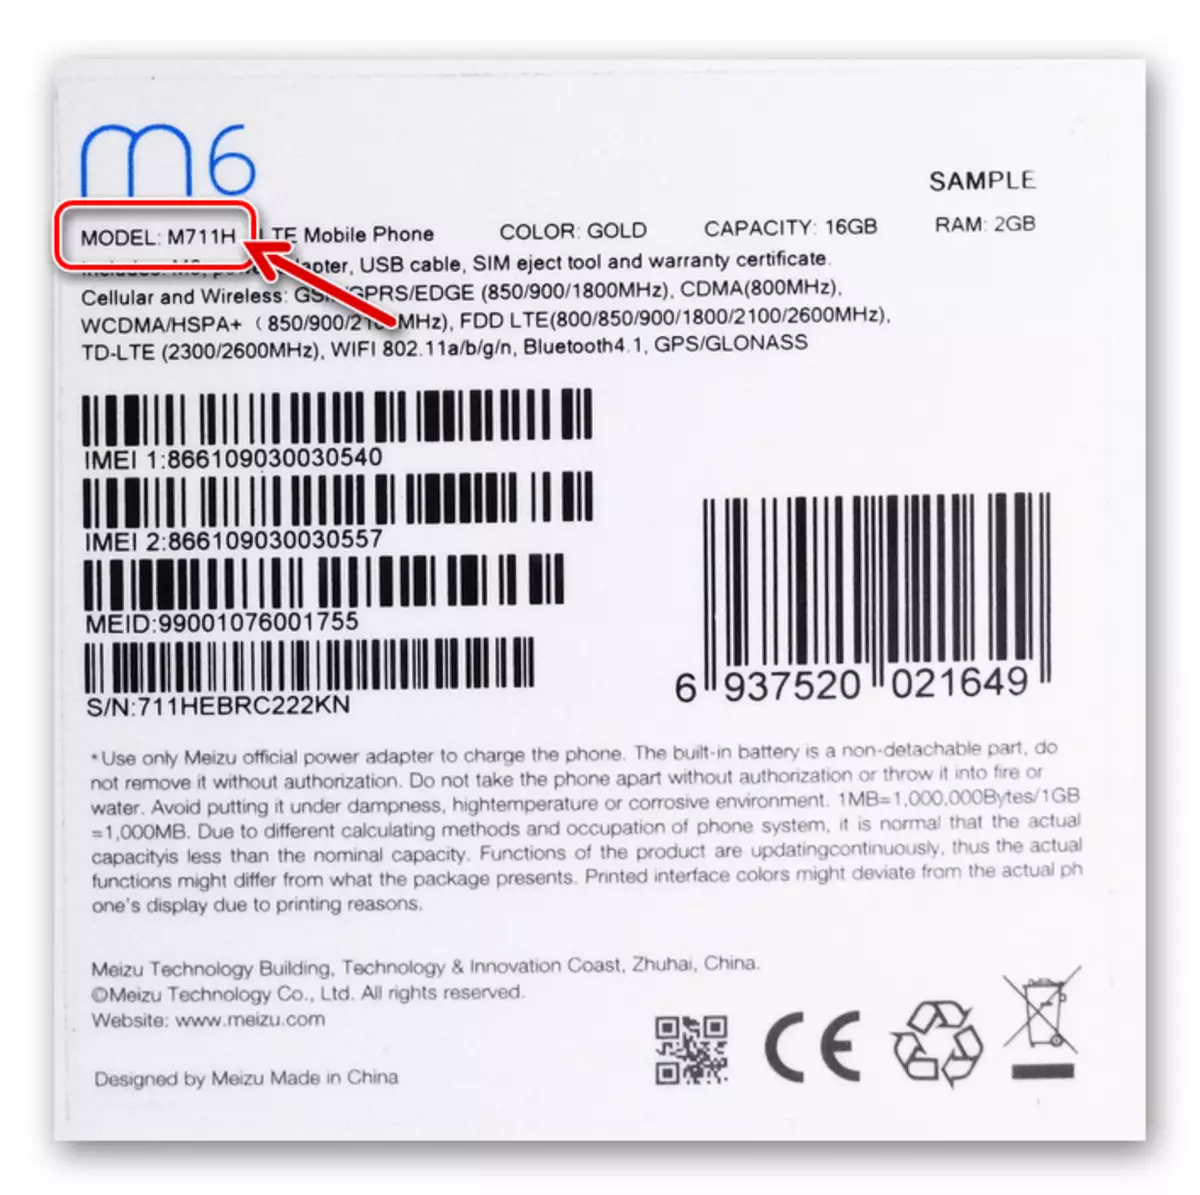 Meizu M6 Sửa đổi điện thoại thông minh trên bao bì của thiết bị